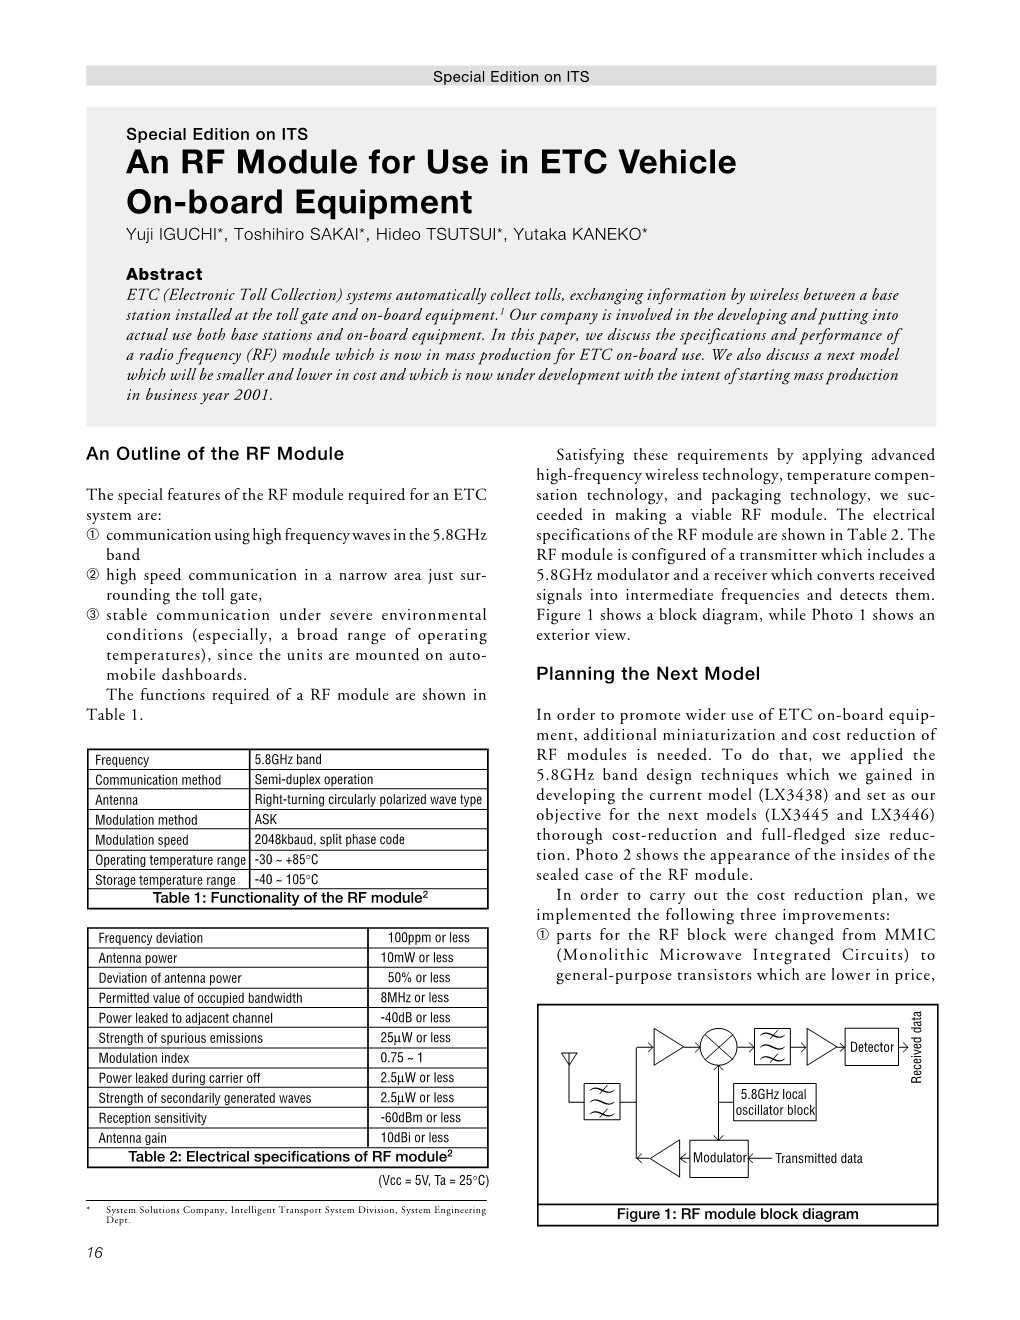 An RF Module for Use in ETC Vehicle On-Board Equipment Yuji IGUCHI*, Toshihiro SAKAI*, Hideo TSUTSUI*, Yutaka KANEKO*